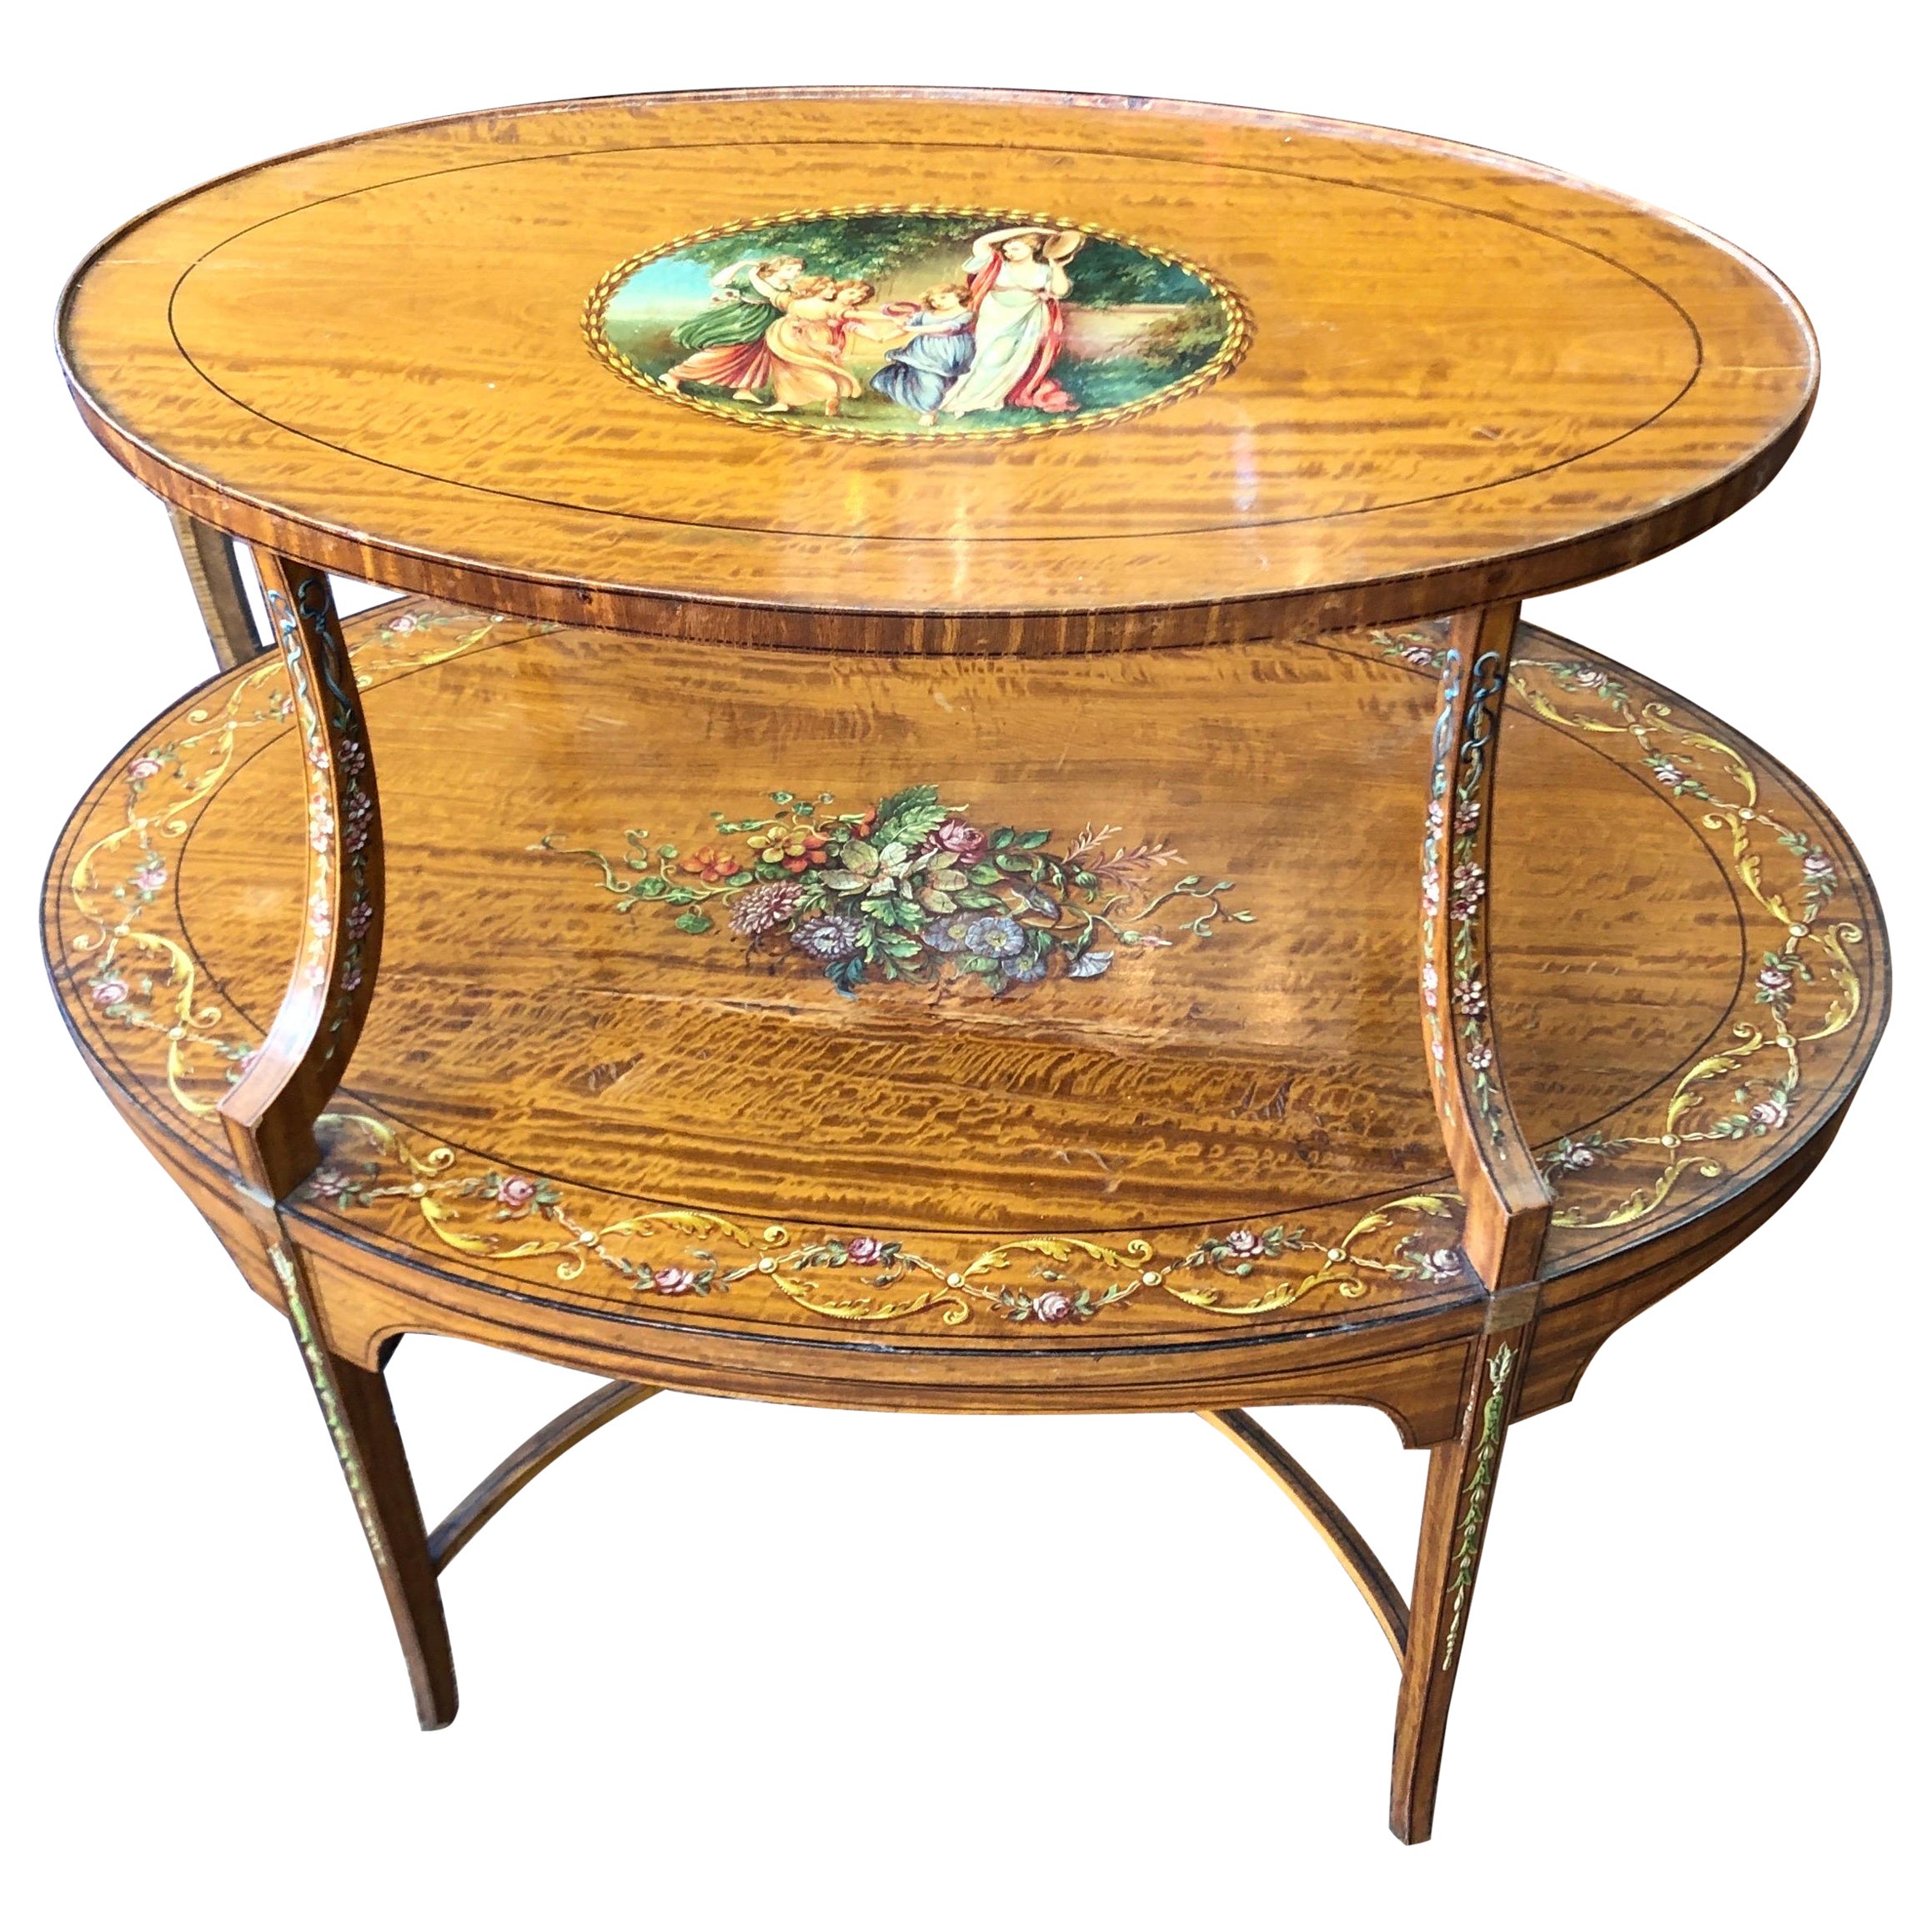 Fabelhafter antiker englischer edwardianischer handbemalter ovaler Tisch aus Seidenholz mit zwei Etagen, Adam